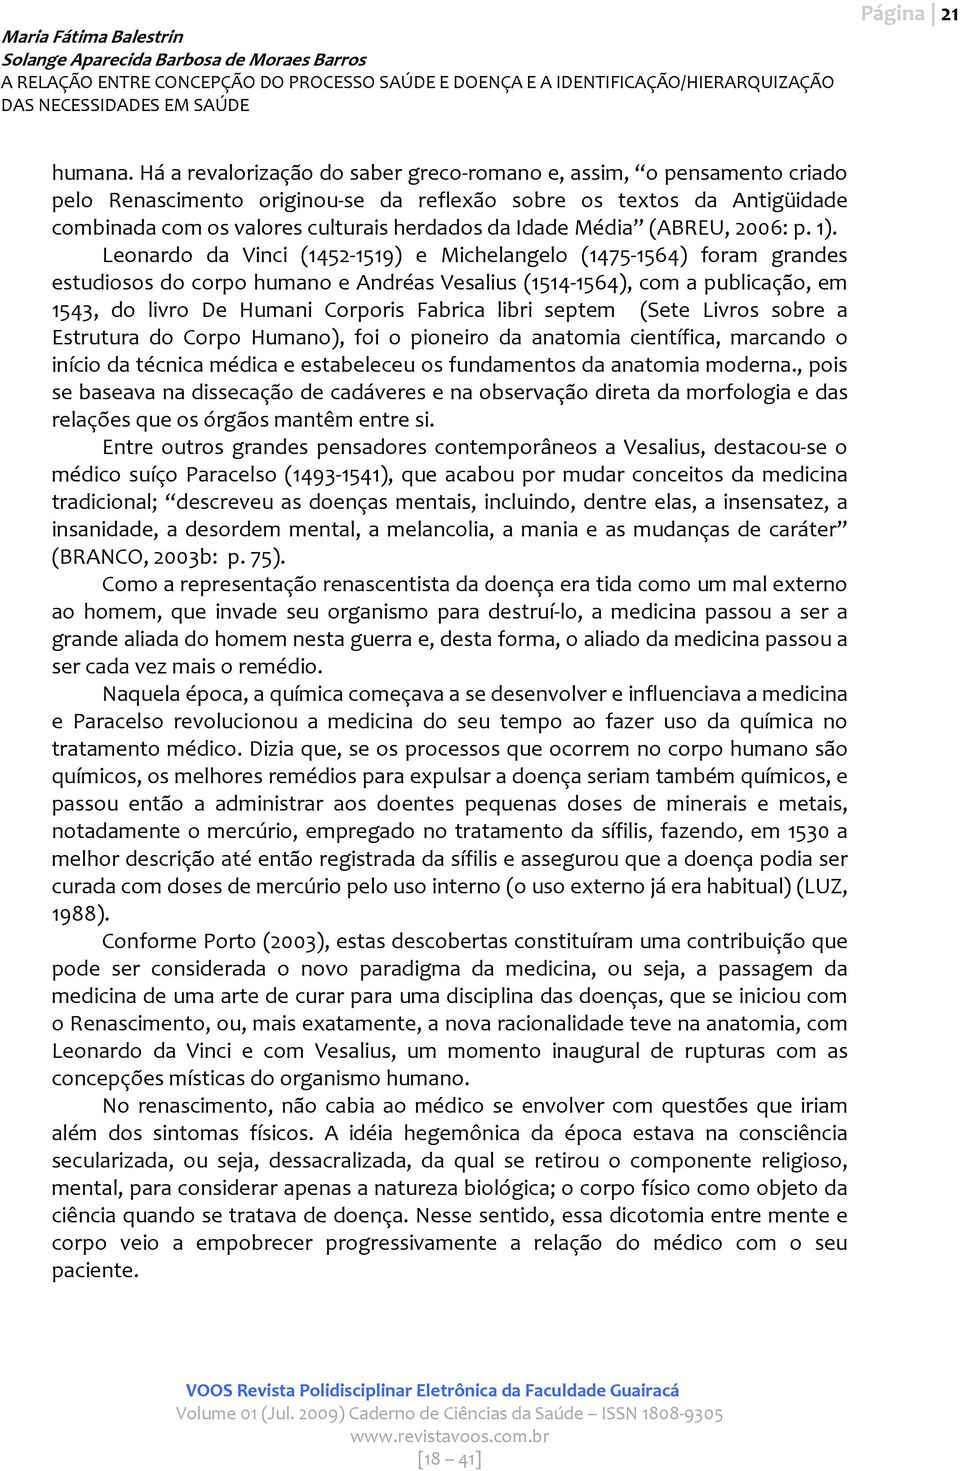 Média (ABREU, 2006: p. 1).